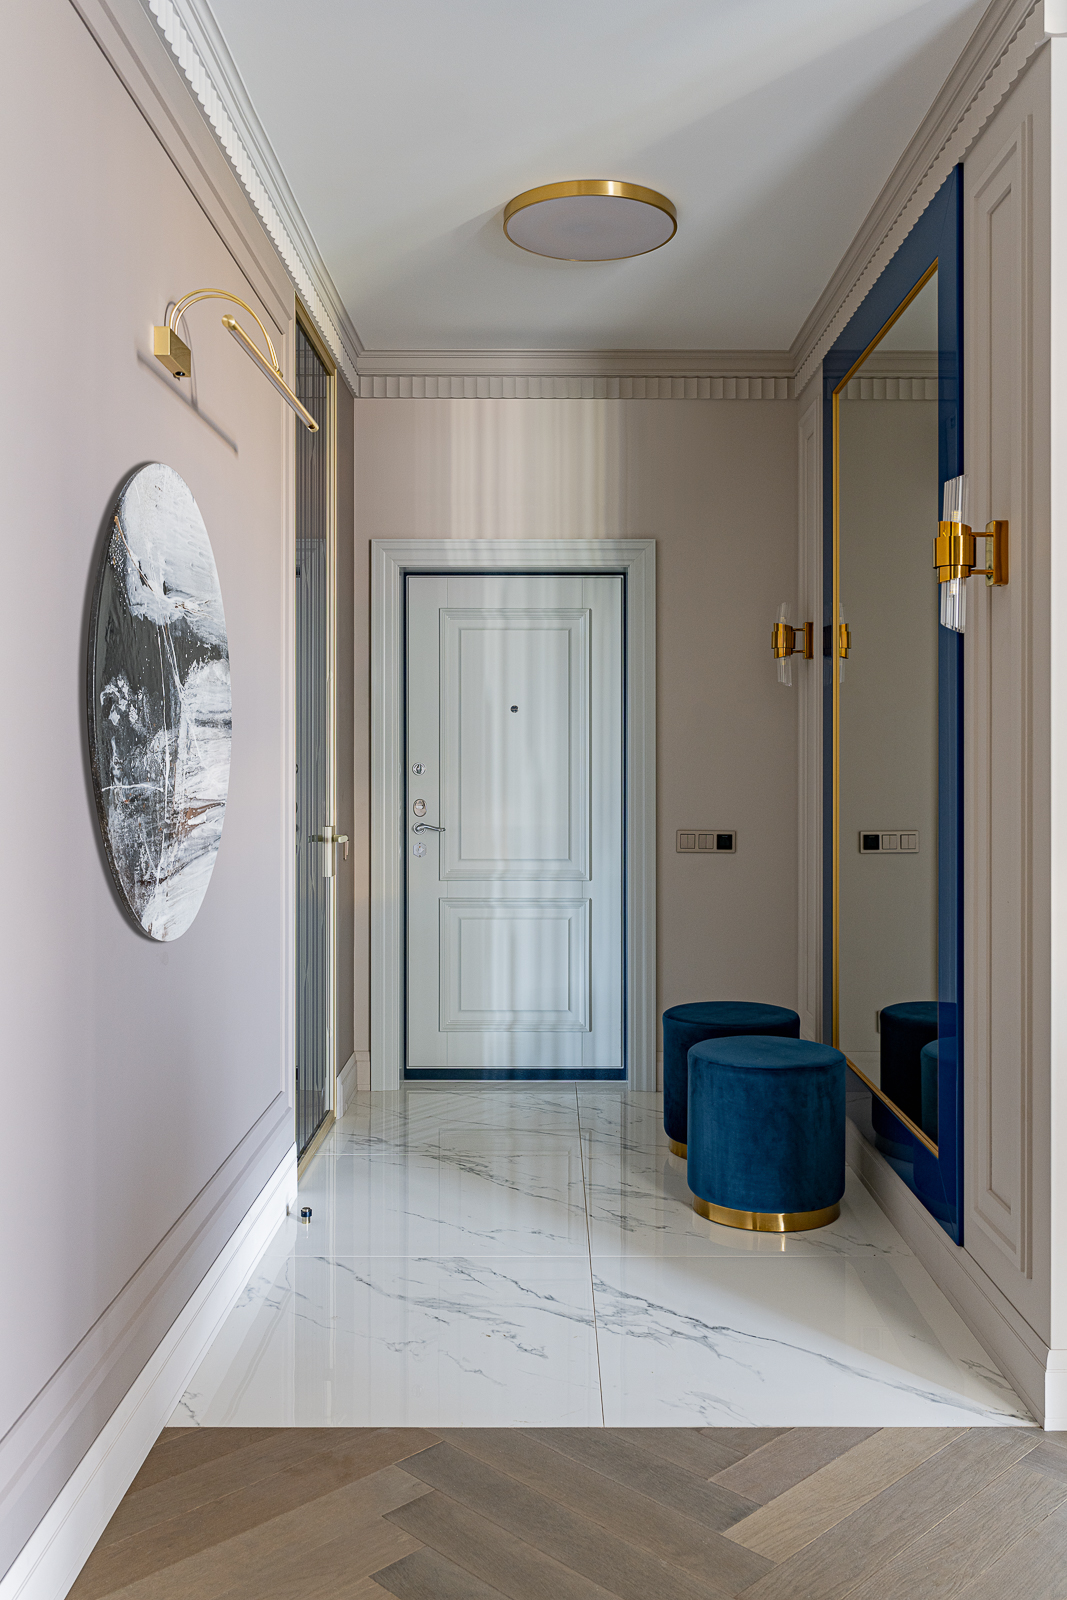 Lối vào căn hộ lát đá cẩm thạch cùng chiếc ghế đôn và tấm gương cỡ lớn viền khung màu xanh lam đậm, kết hợp các chi tiết mạ vàng đồng sang chảnh.